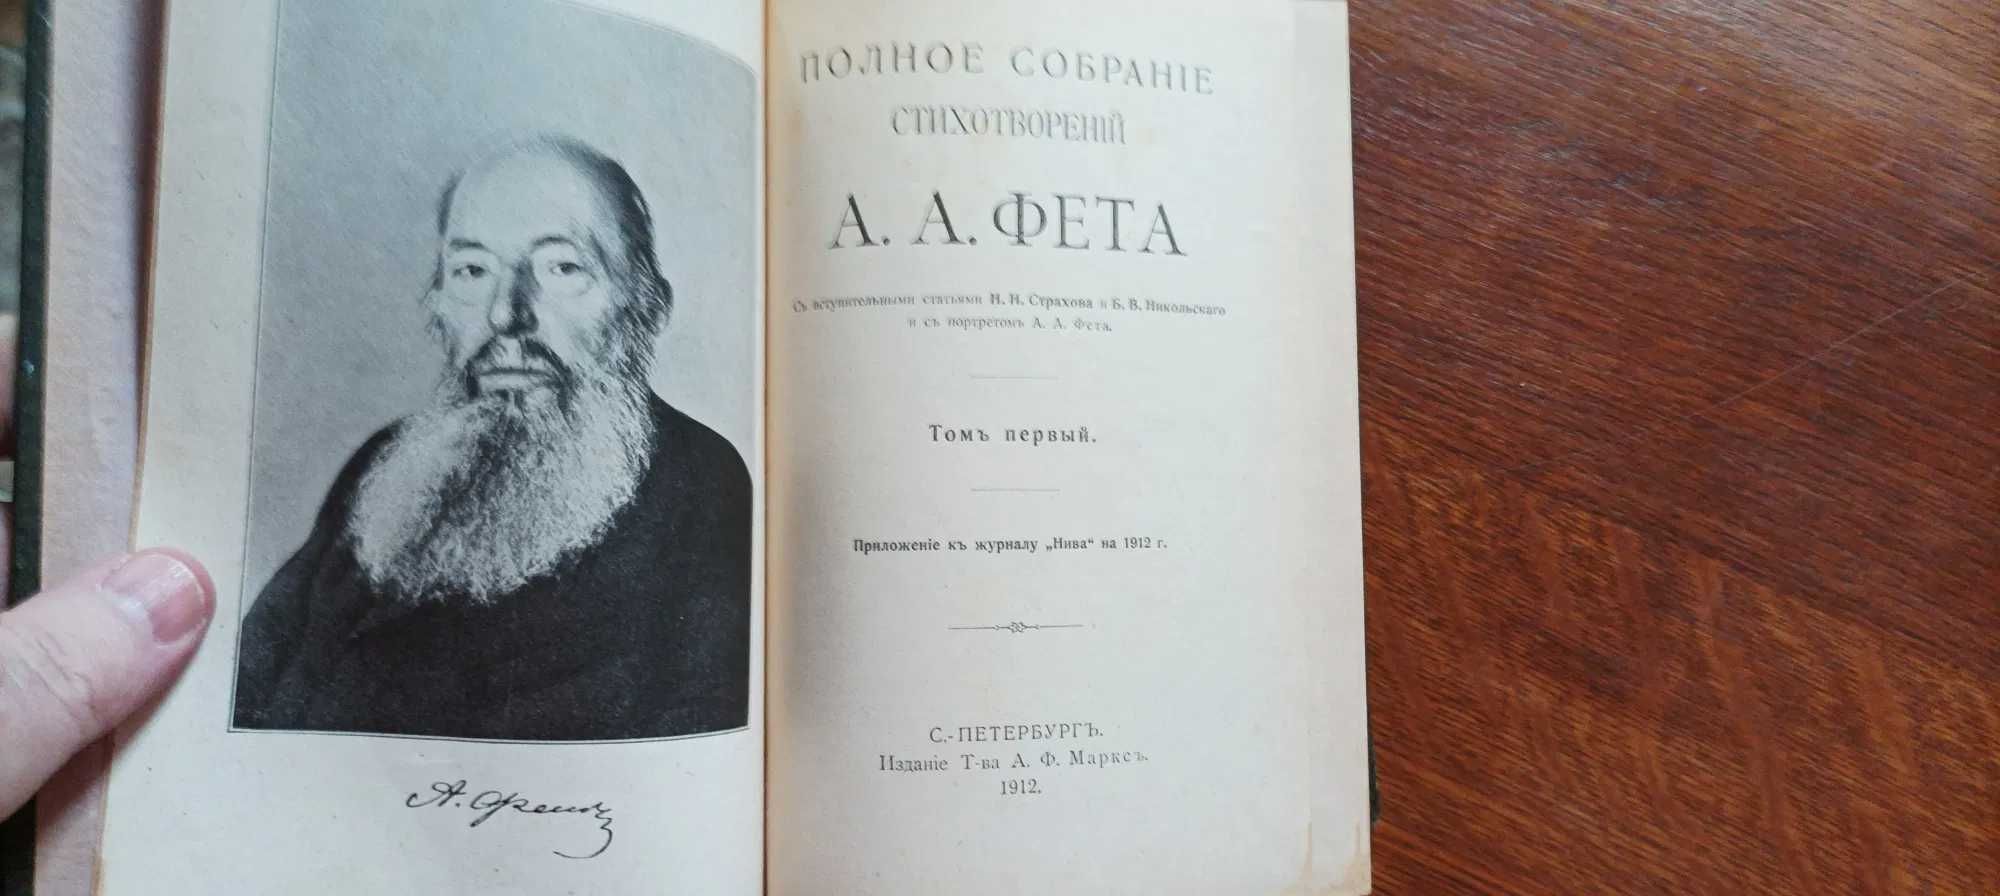 А.А.Фет.Полное собрание сочинений в 2 т. Издательство Маркса 1912год